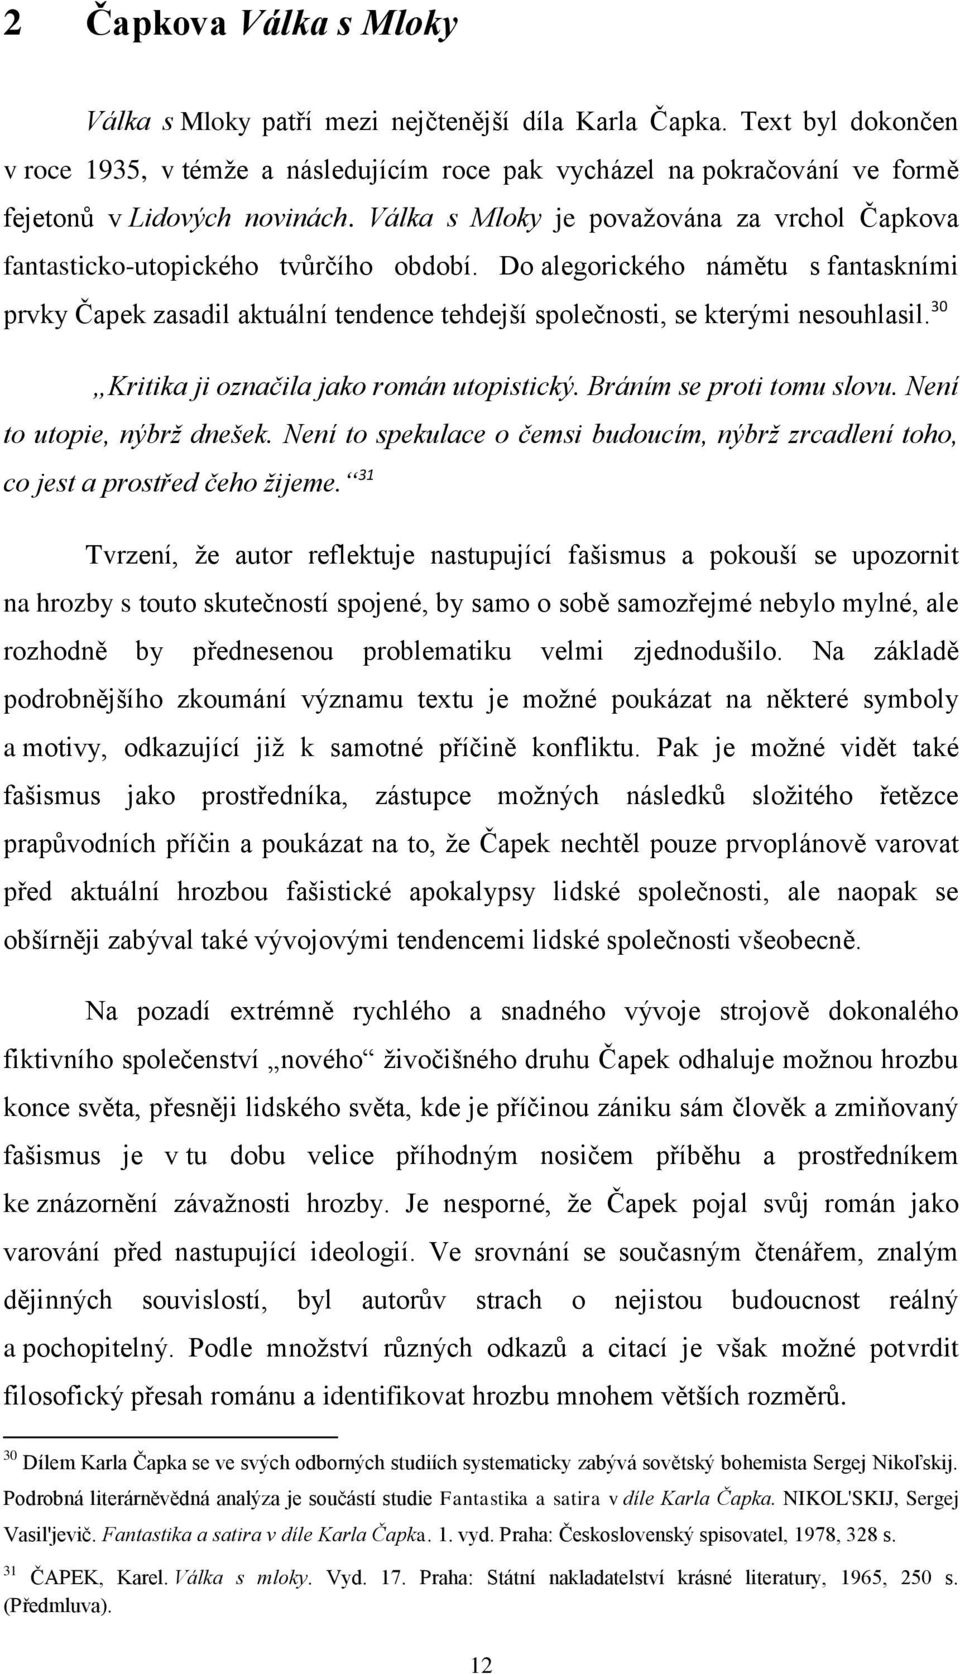 MASARYKOVA UNIVERZITA - PDF Stažení zdarma